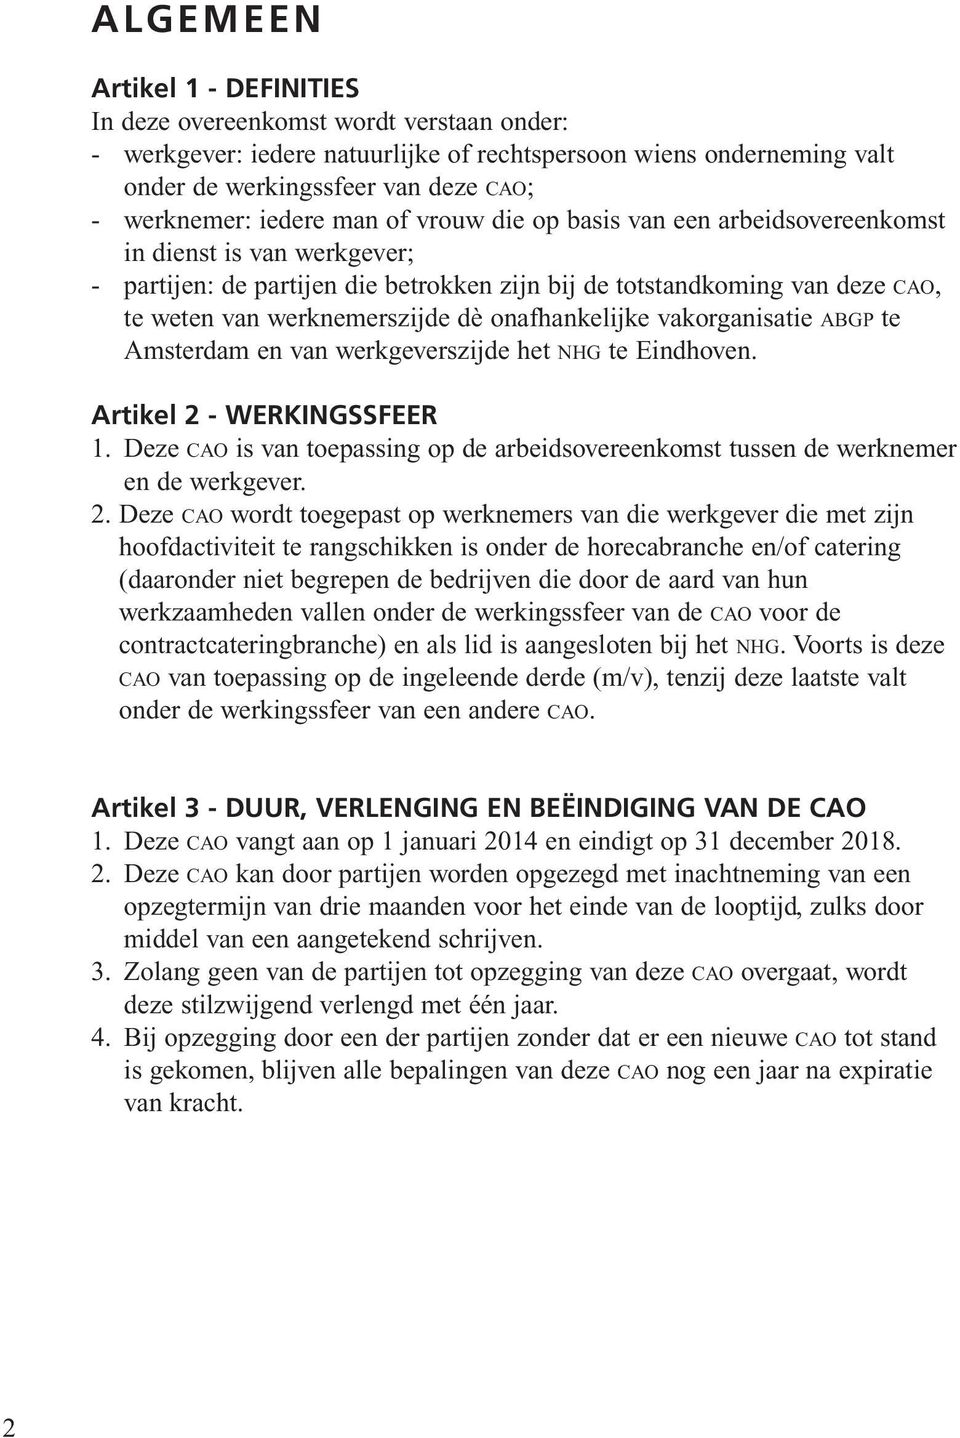 onafhankelijke vakorganisatie abgp te Amsterdam en van werkgeverszijde het nhg te Eindhoven. Artikel 2 - WERKINGSSFEER 1.